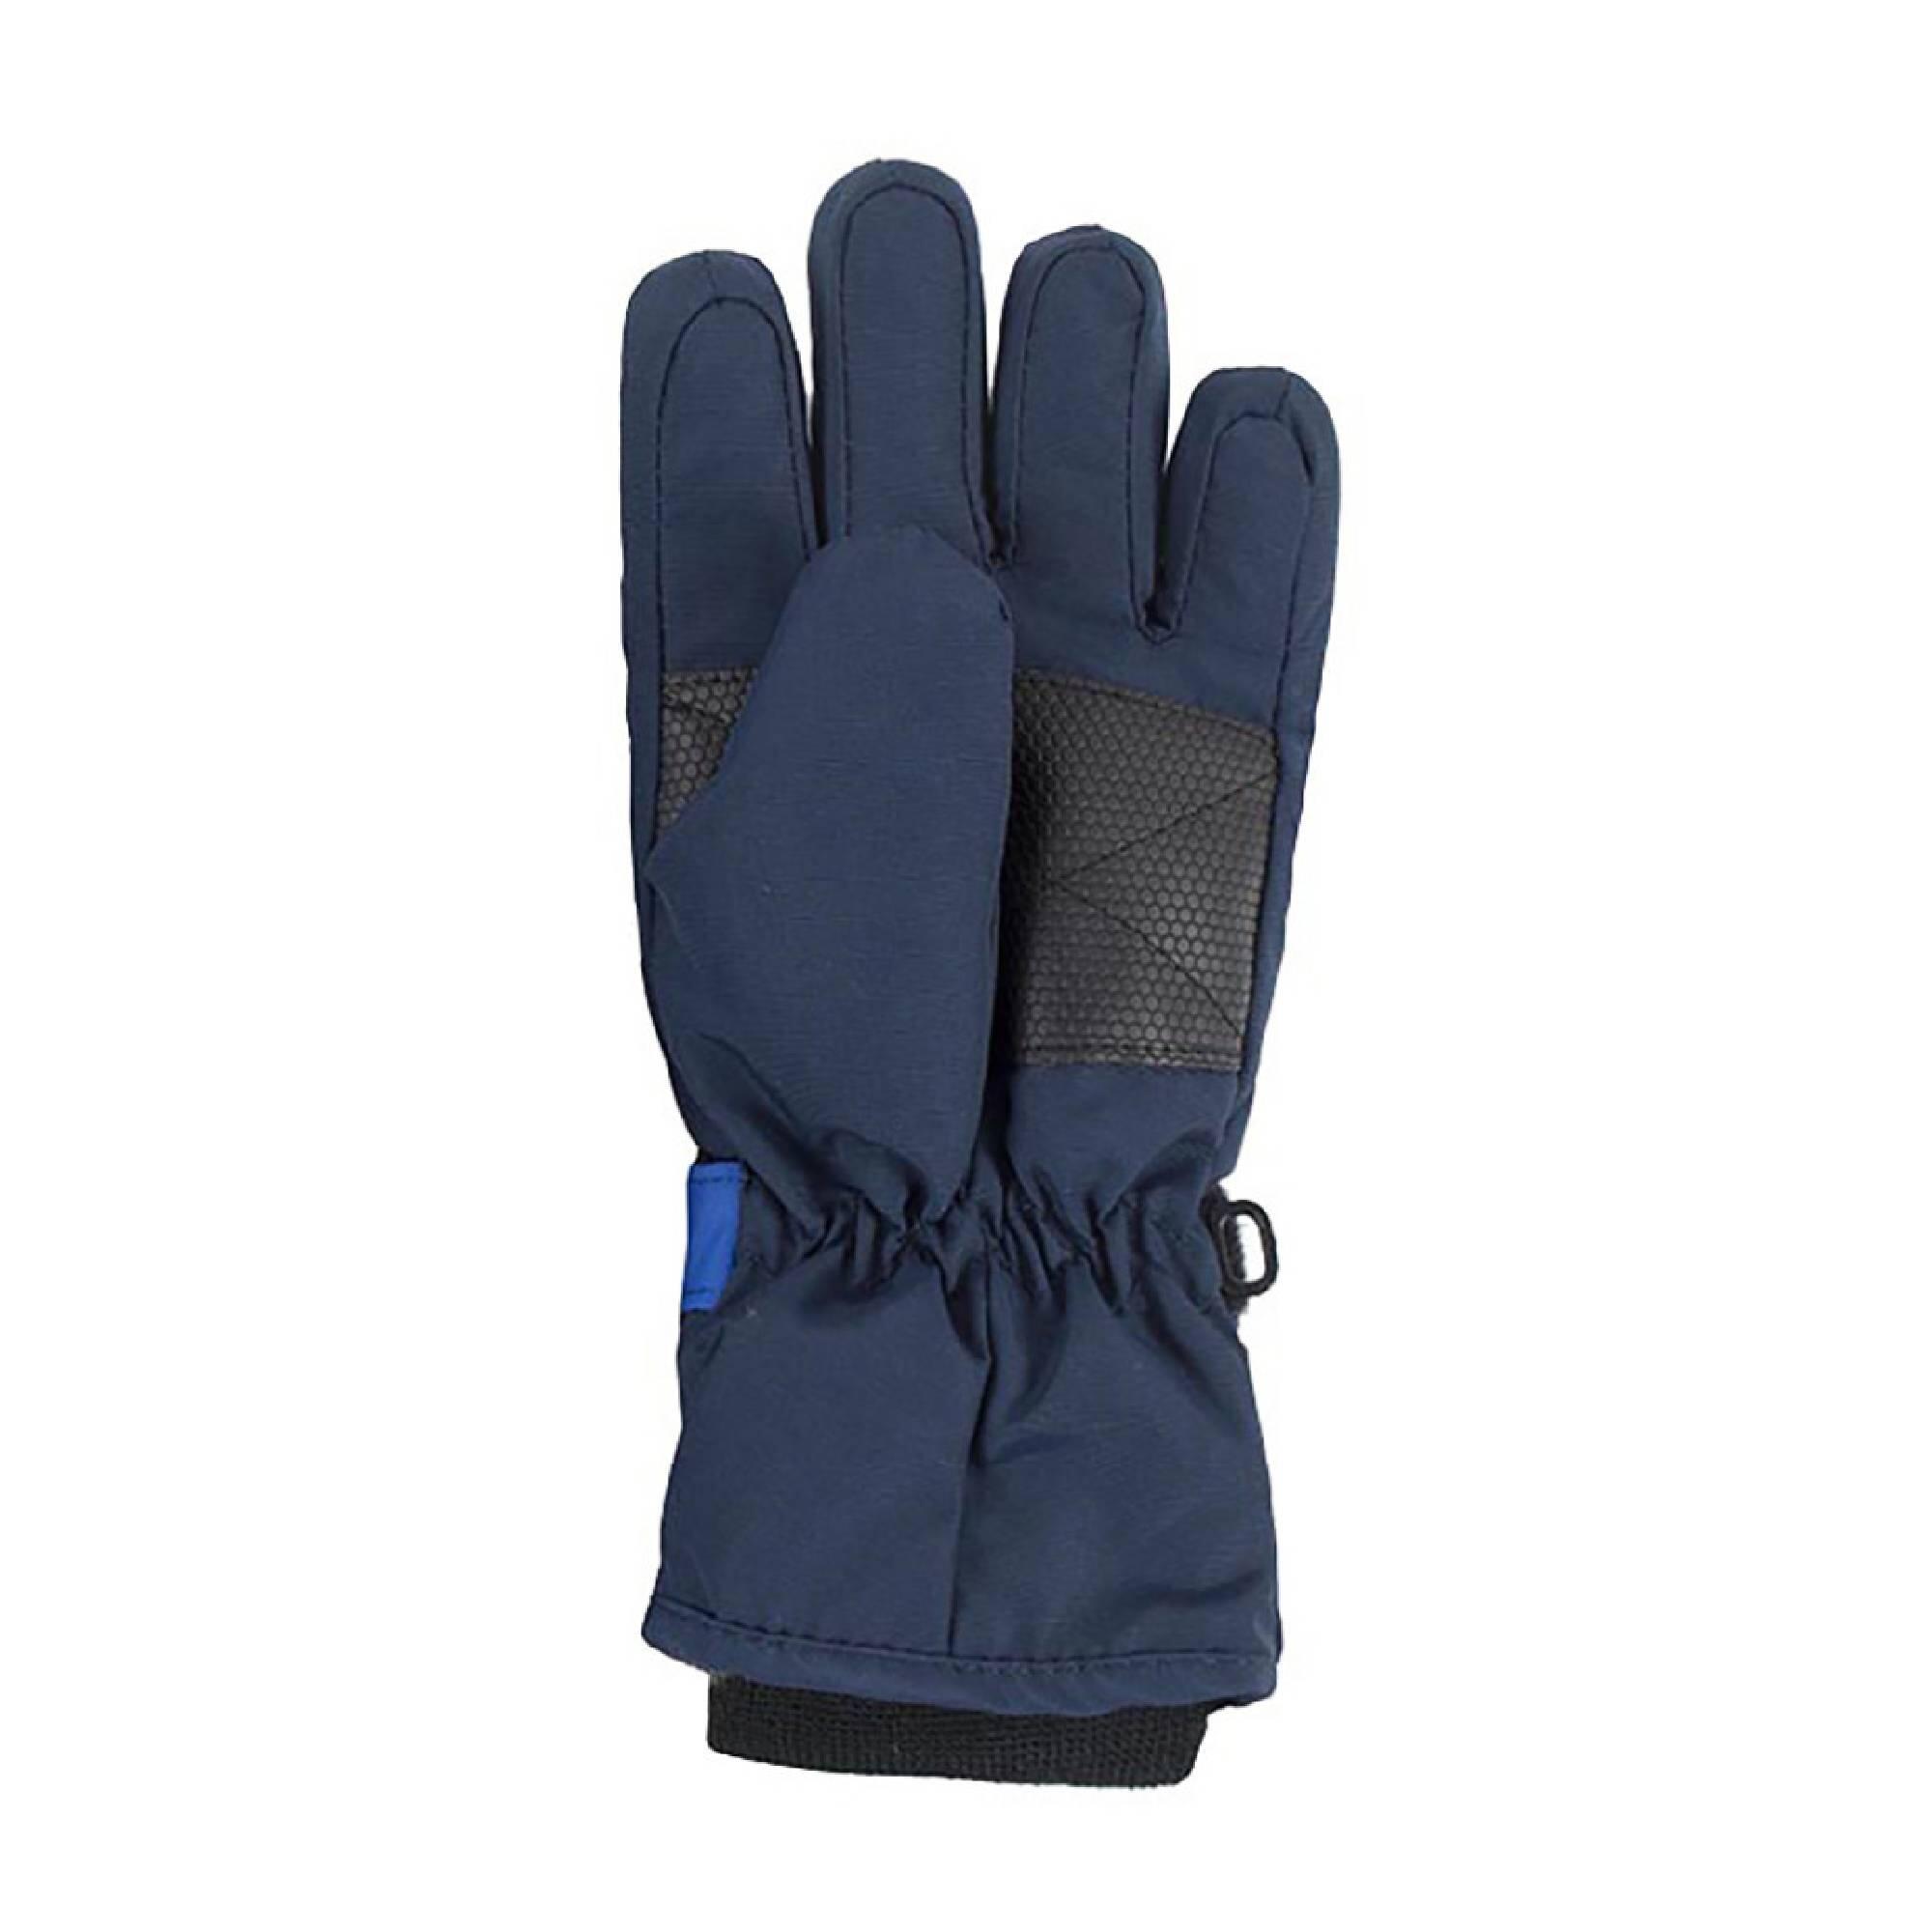 Kids Boys Girls Waterproof Fleece Lined Winter Thermal Ski Gloves 2/4